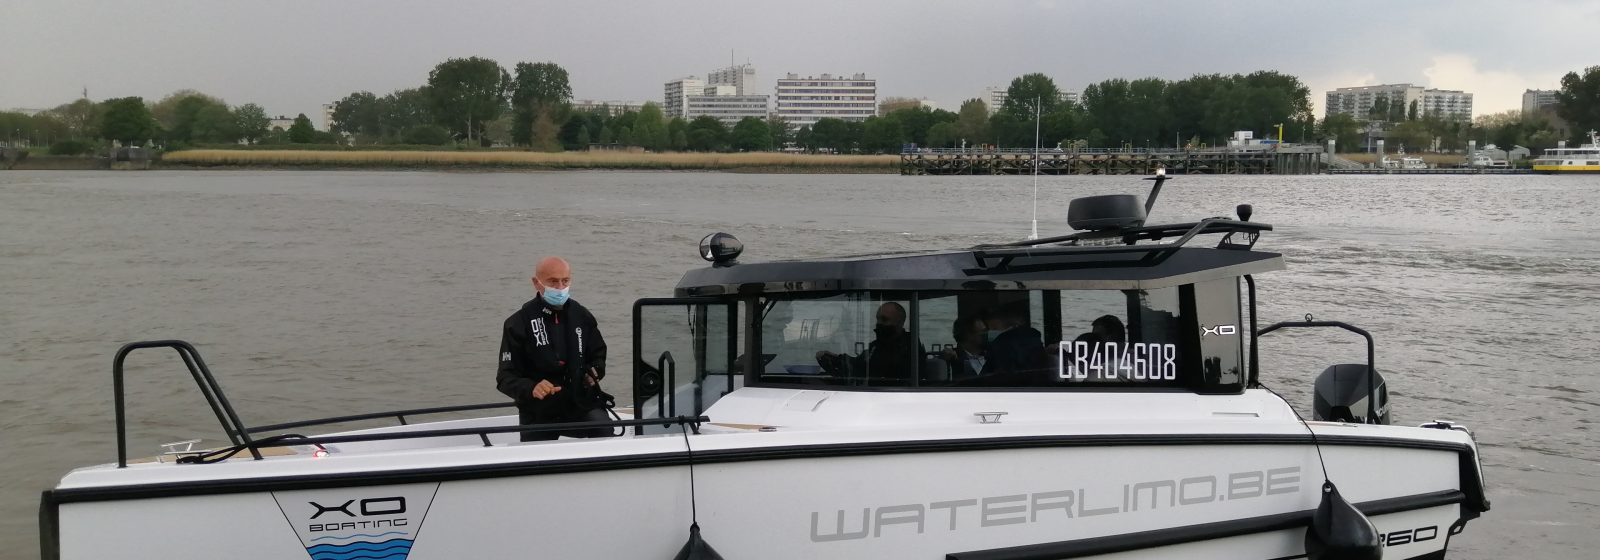 De 'Waterlimo' verbindt Temse met centrum Antwerpen